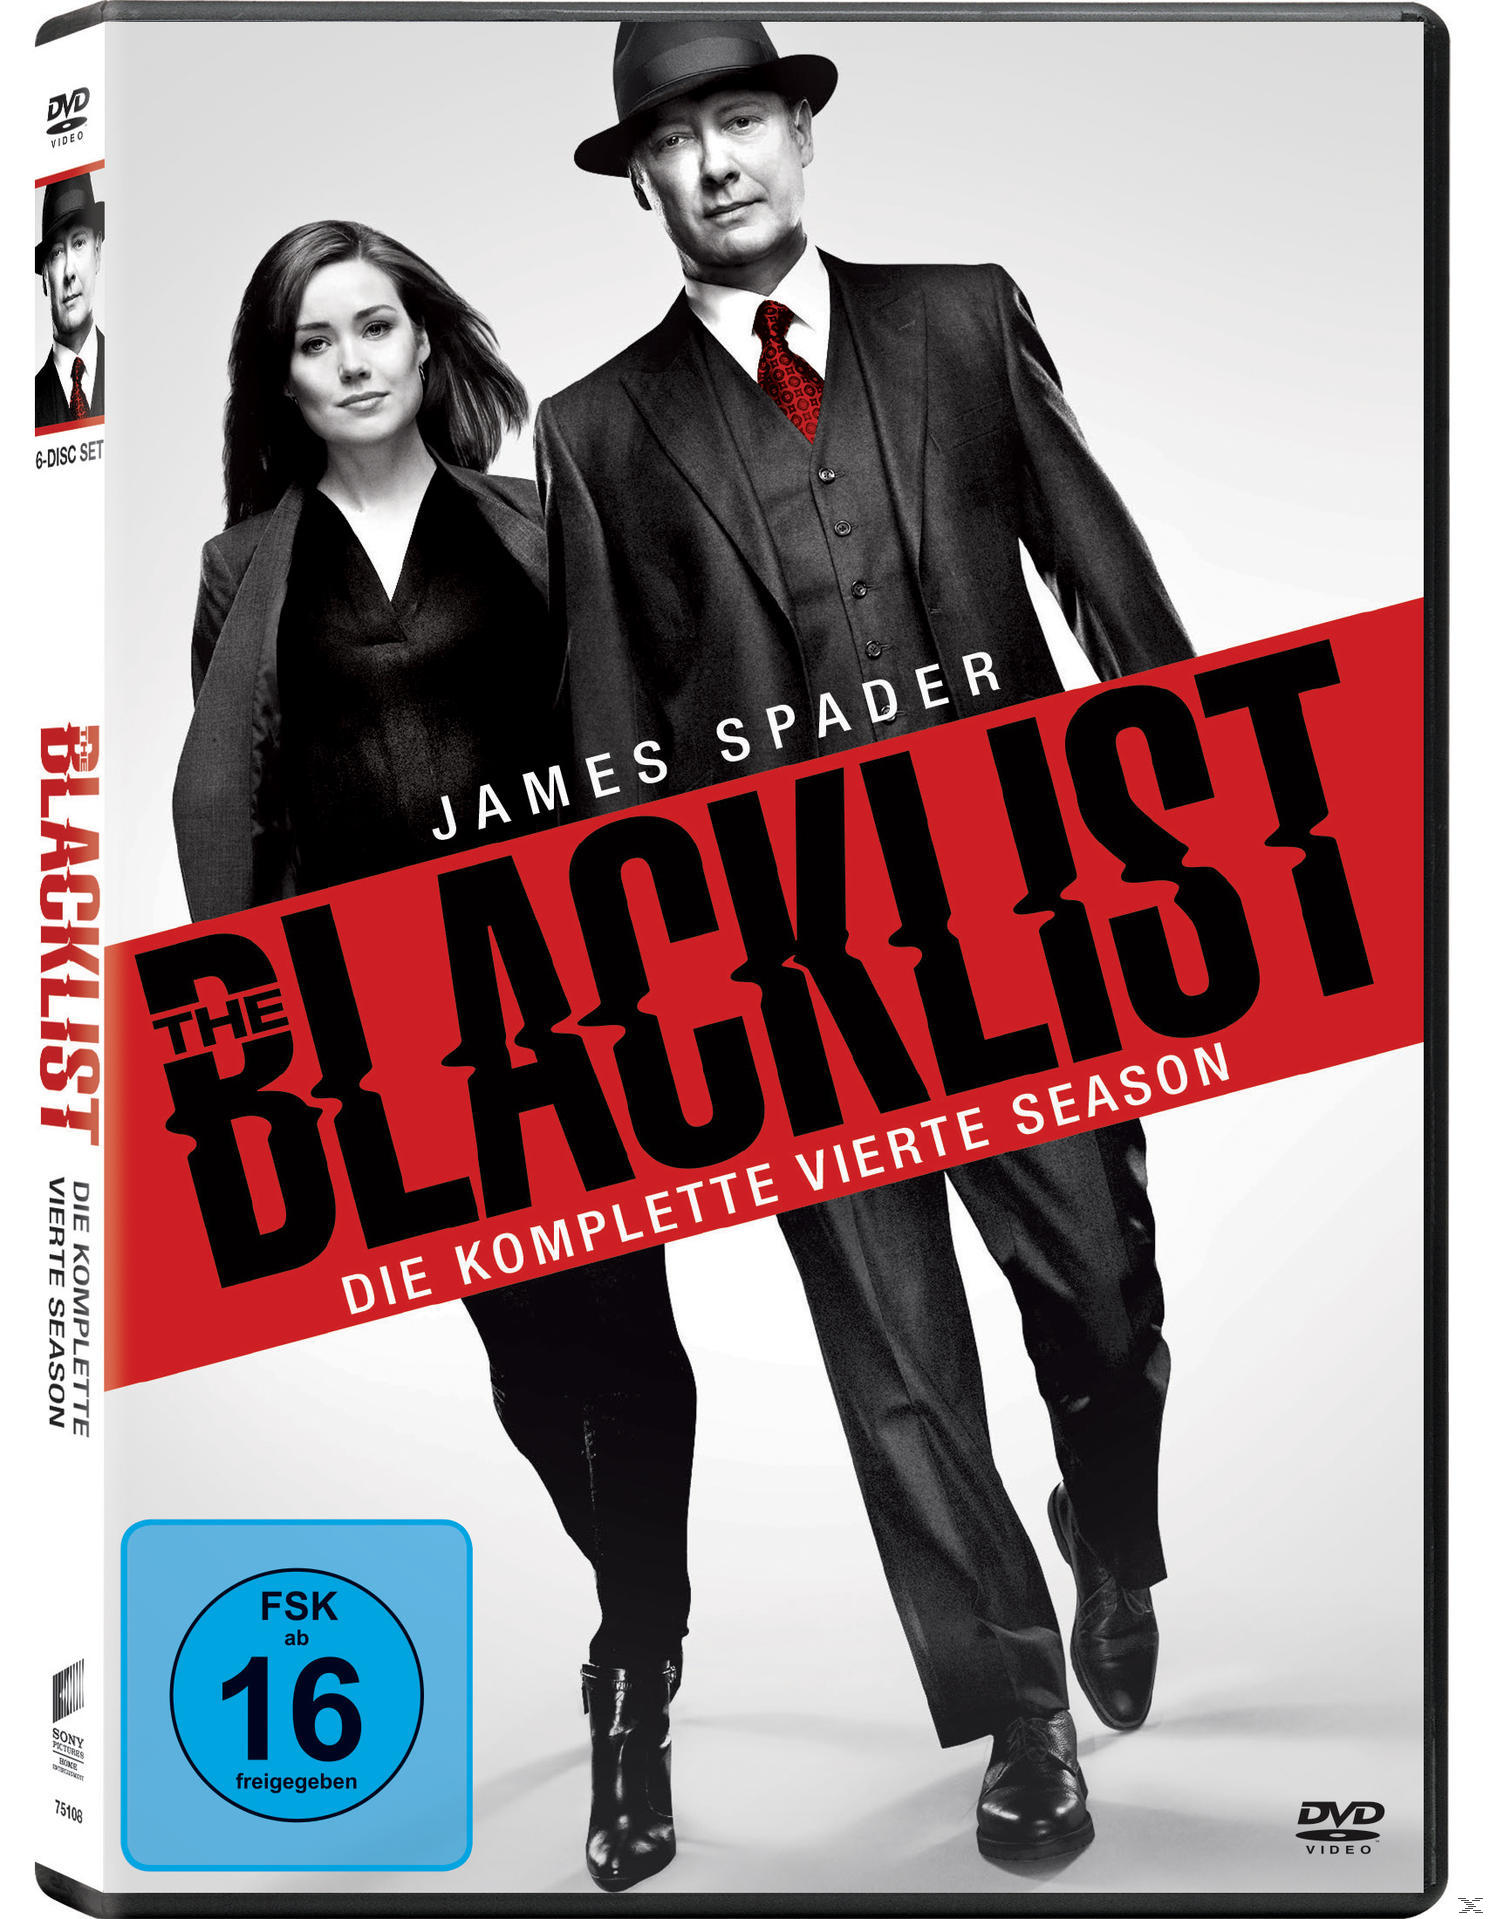 Blacklist vierte The Die Season DVD komplette -